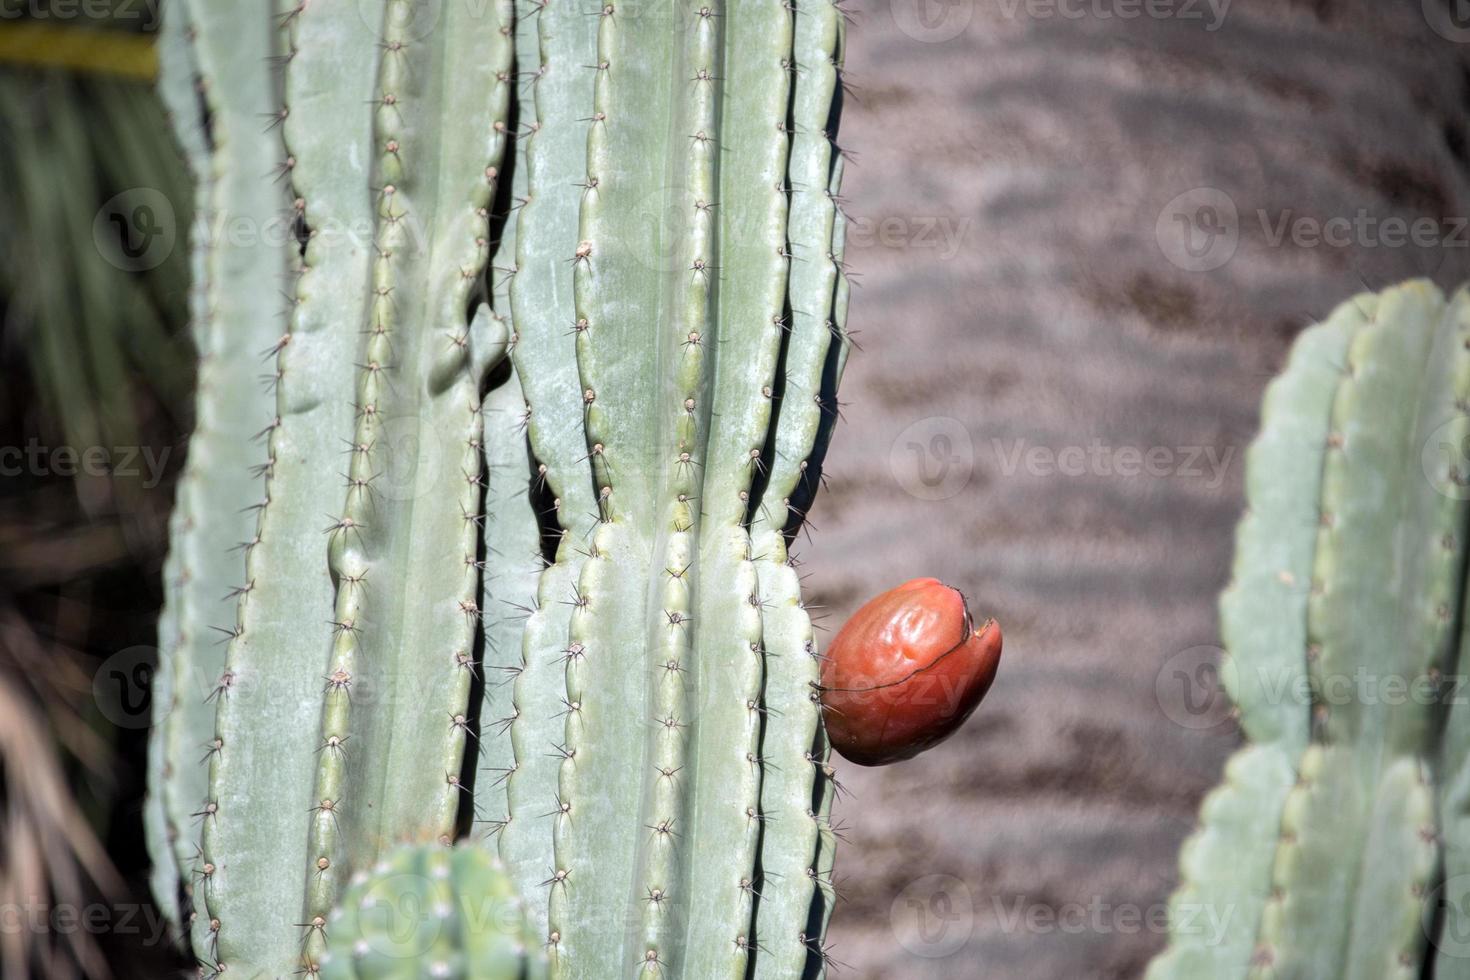 kaktus rote offene frucht auf pflanzendetail foto